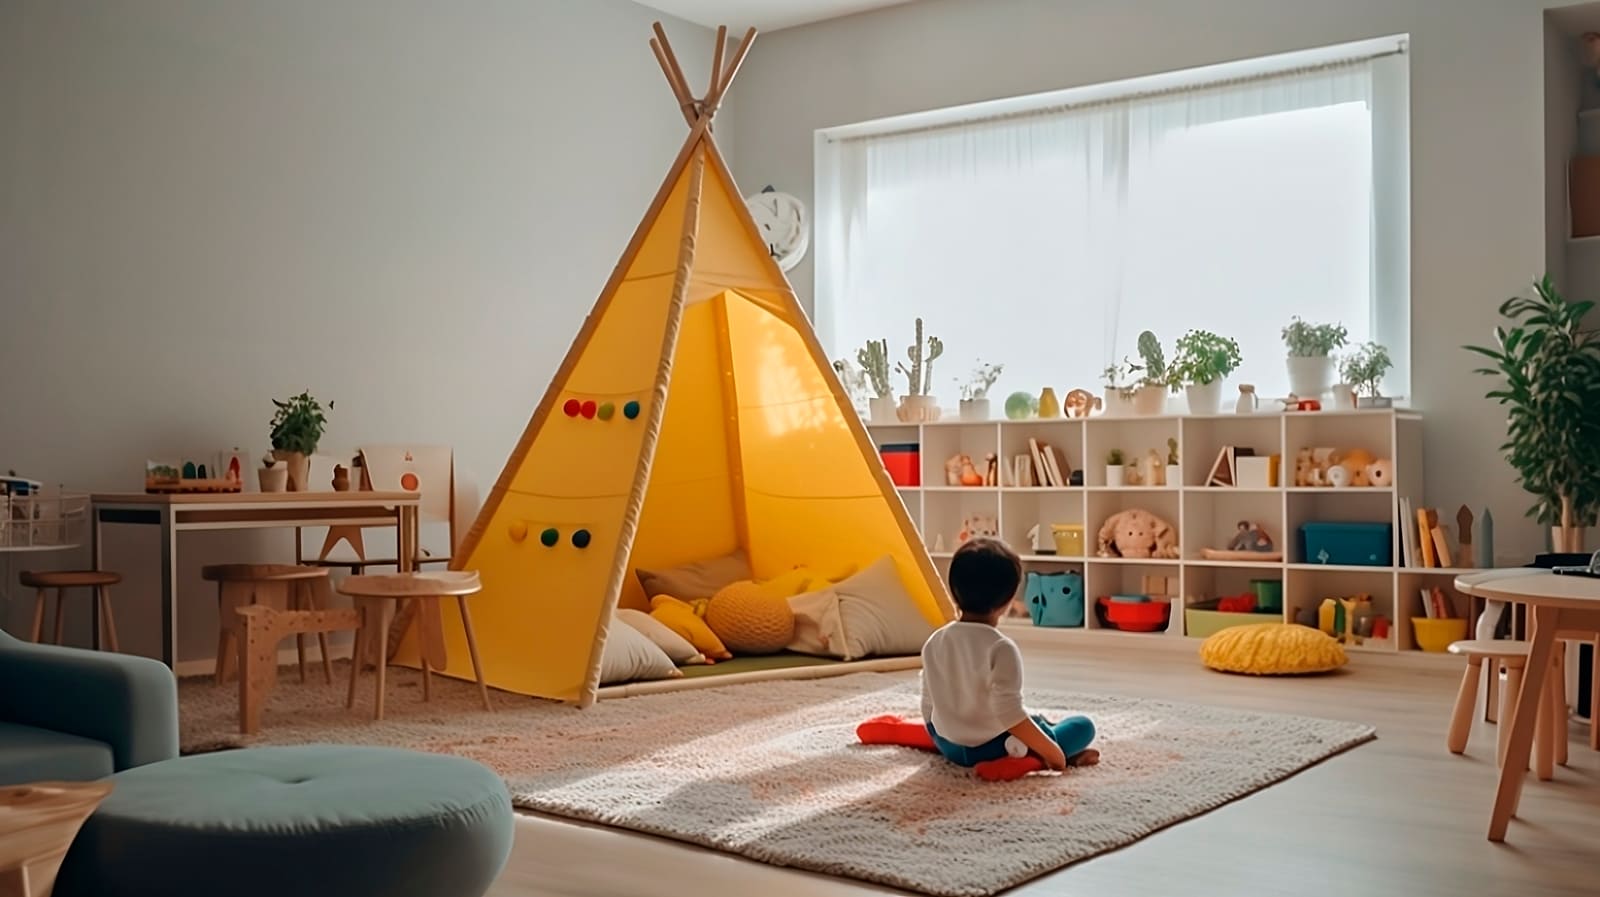 Imagem de um quarto transformado em espaço sensorial com uma cabana de pano no centro e uma criança autista sentada no chão.